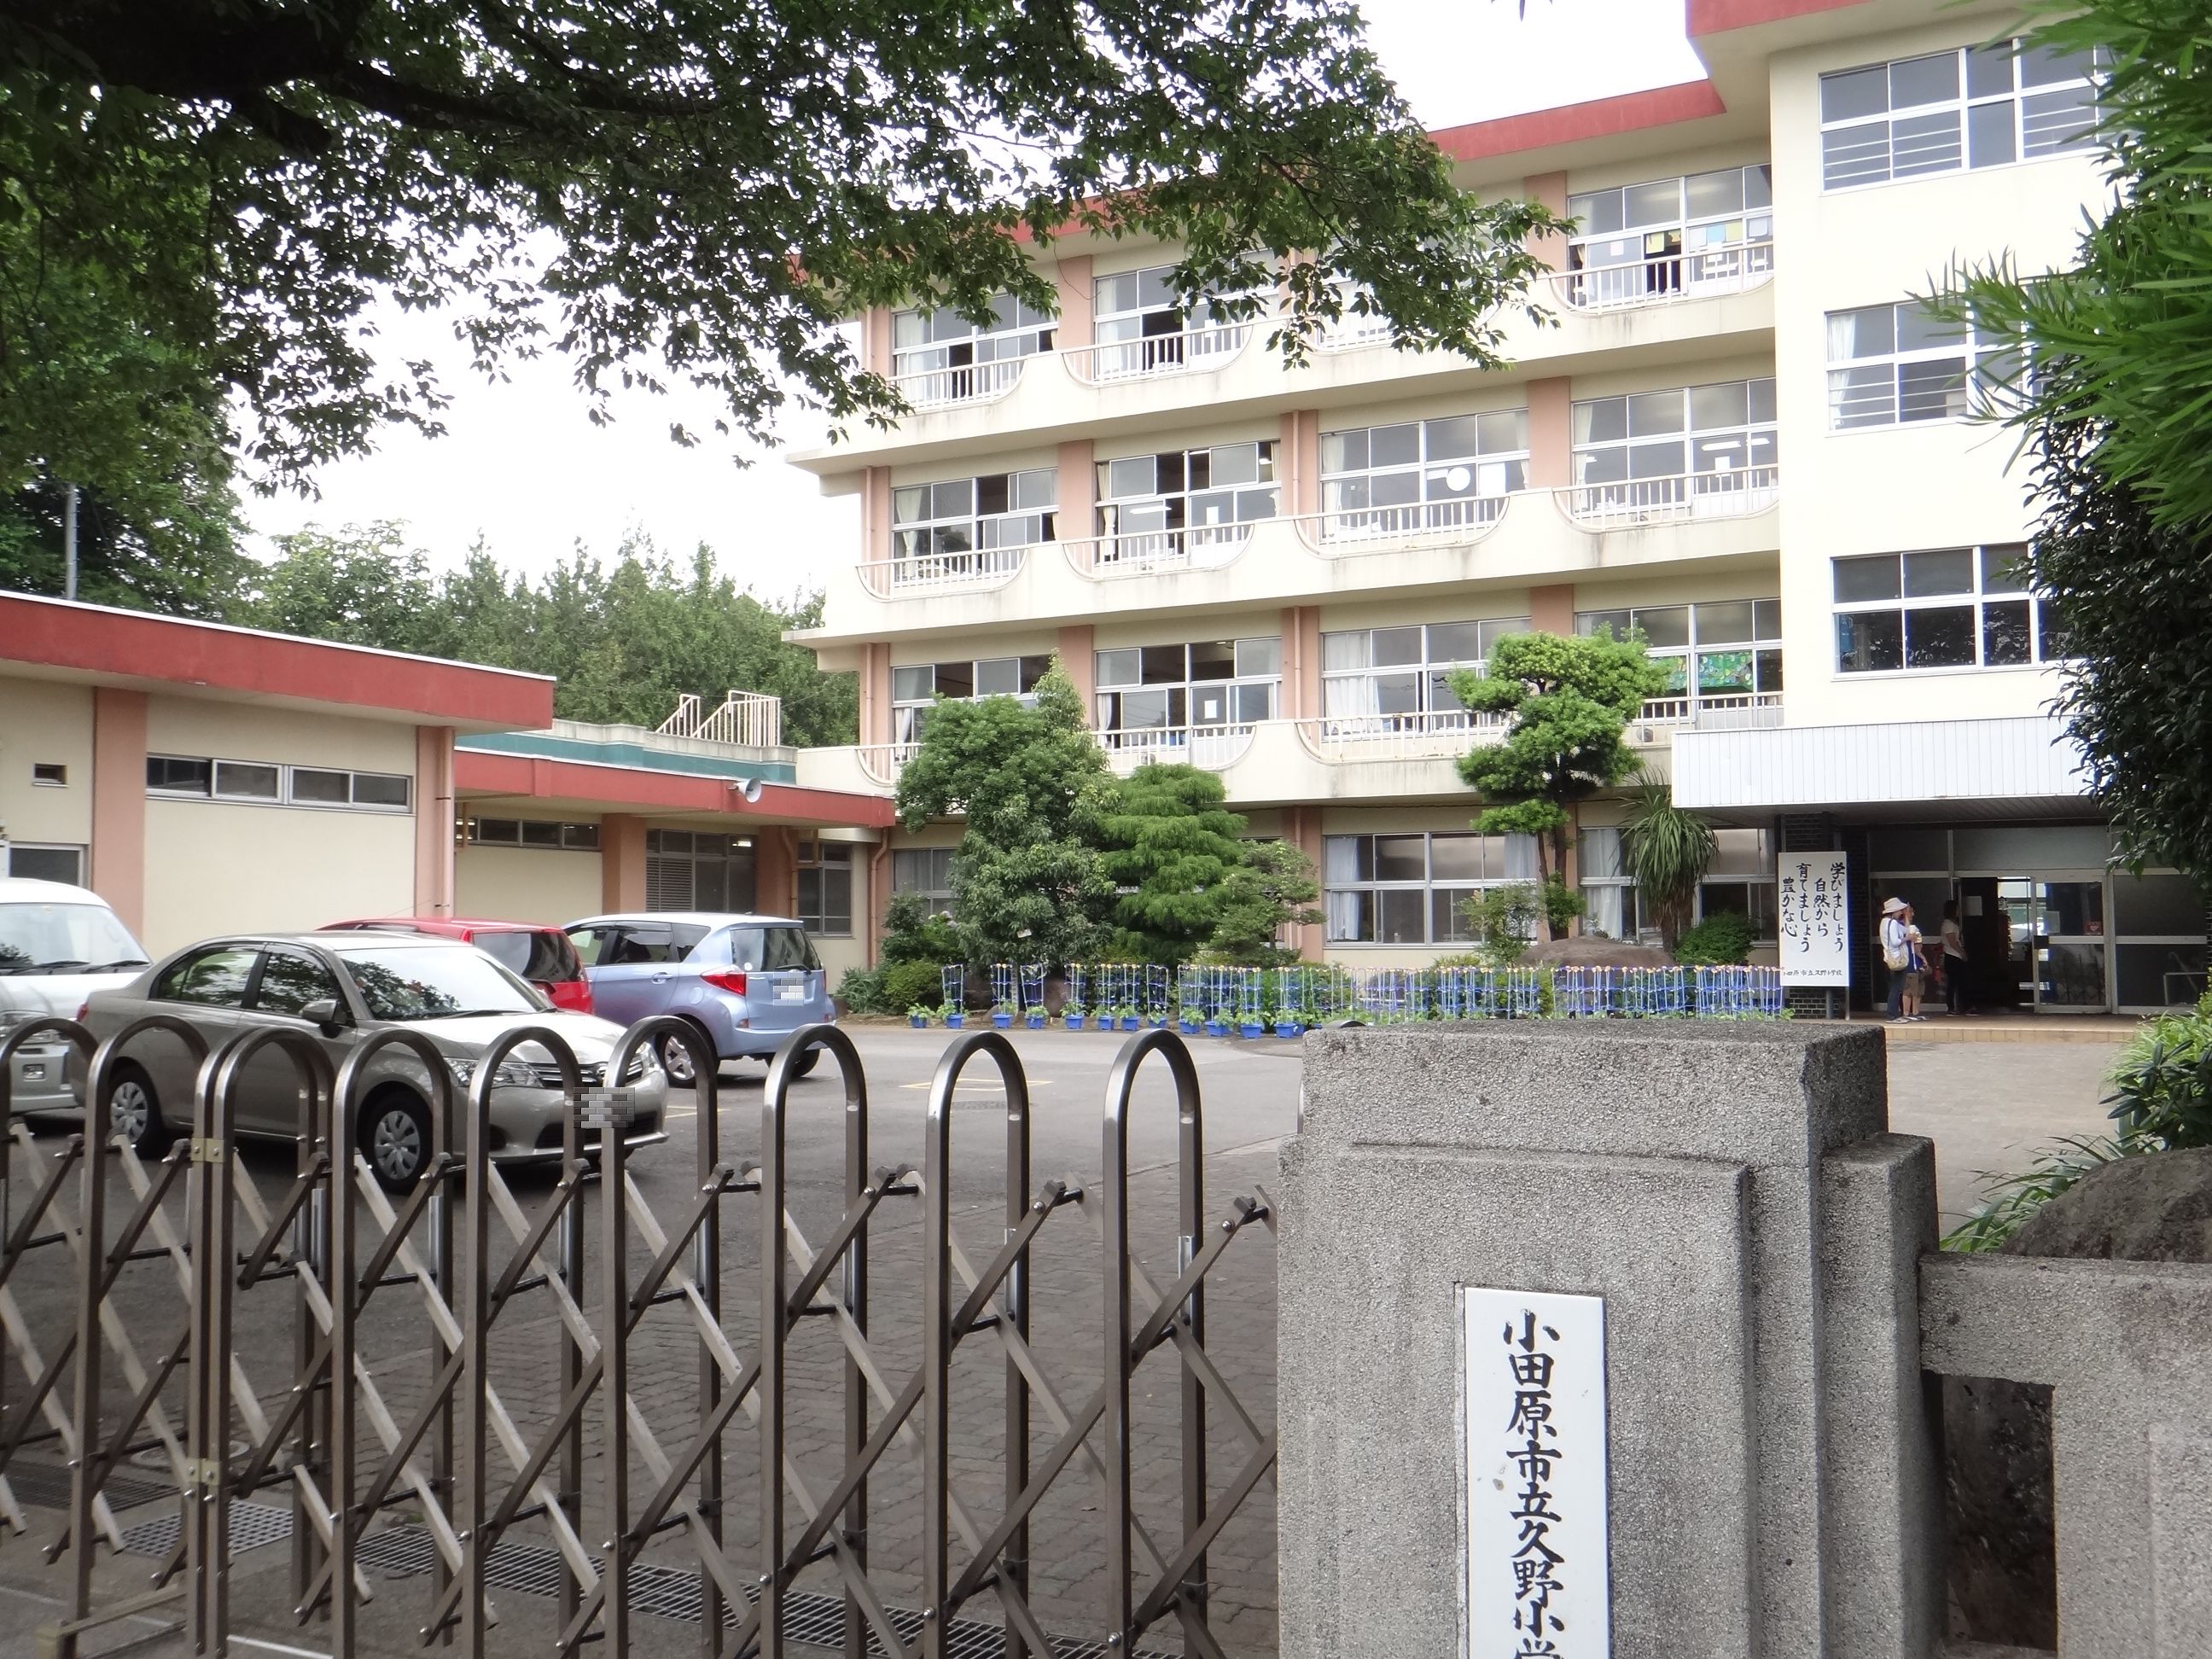 Primary school. Municipal Kuno to elementary school (elementary school) 560m